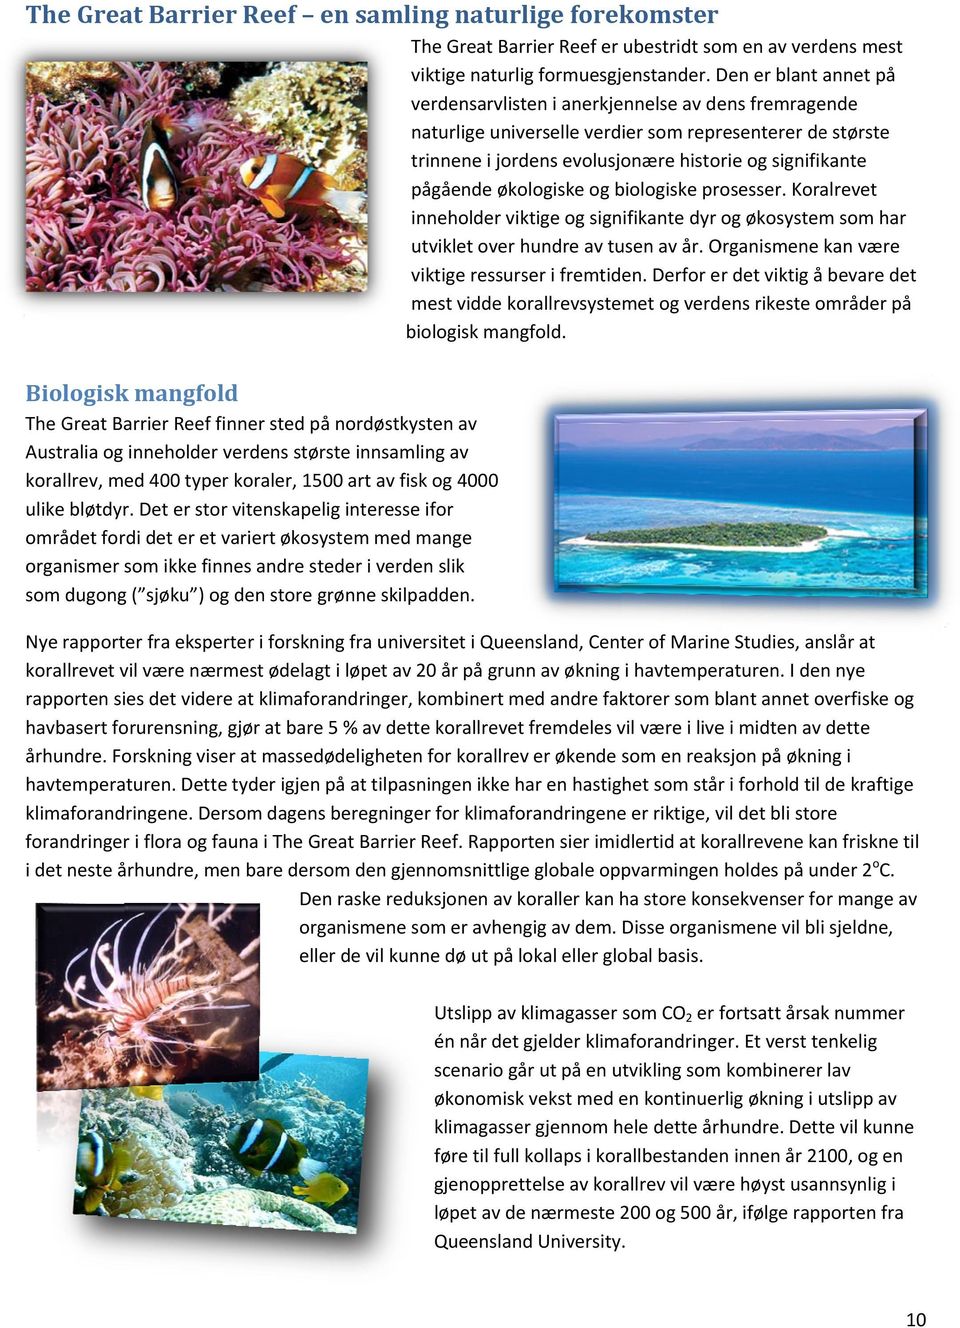 økologiske og biologiske prosesser. Koralrevet inneholder viktige og signifikante dyr og økosystem som har utviklet over hundre av tusen av år. Organismene kan være viktige ressurser i fremtiden.